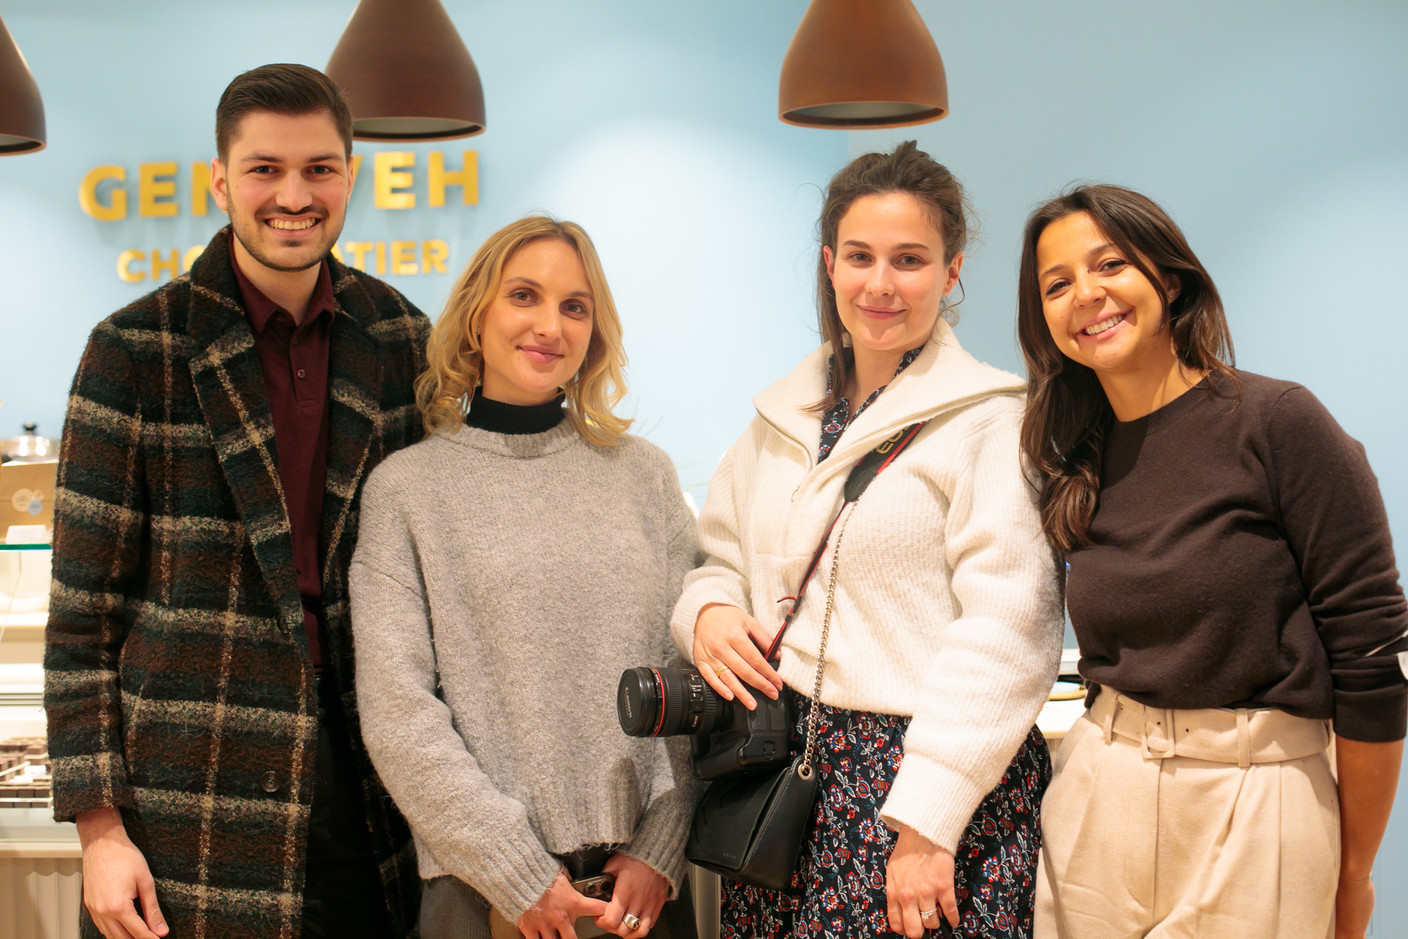 La nouvelle et très élégante boutique Genaveh a été officiellement inaugurée le jeudi 17 mars, en présence de la presse, de personnalités de la scène gastronomique luxembourgeoise et de proches d’Alexandra Kahn… (Photo: Matic Zorman/Maison Moderne)